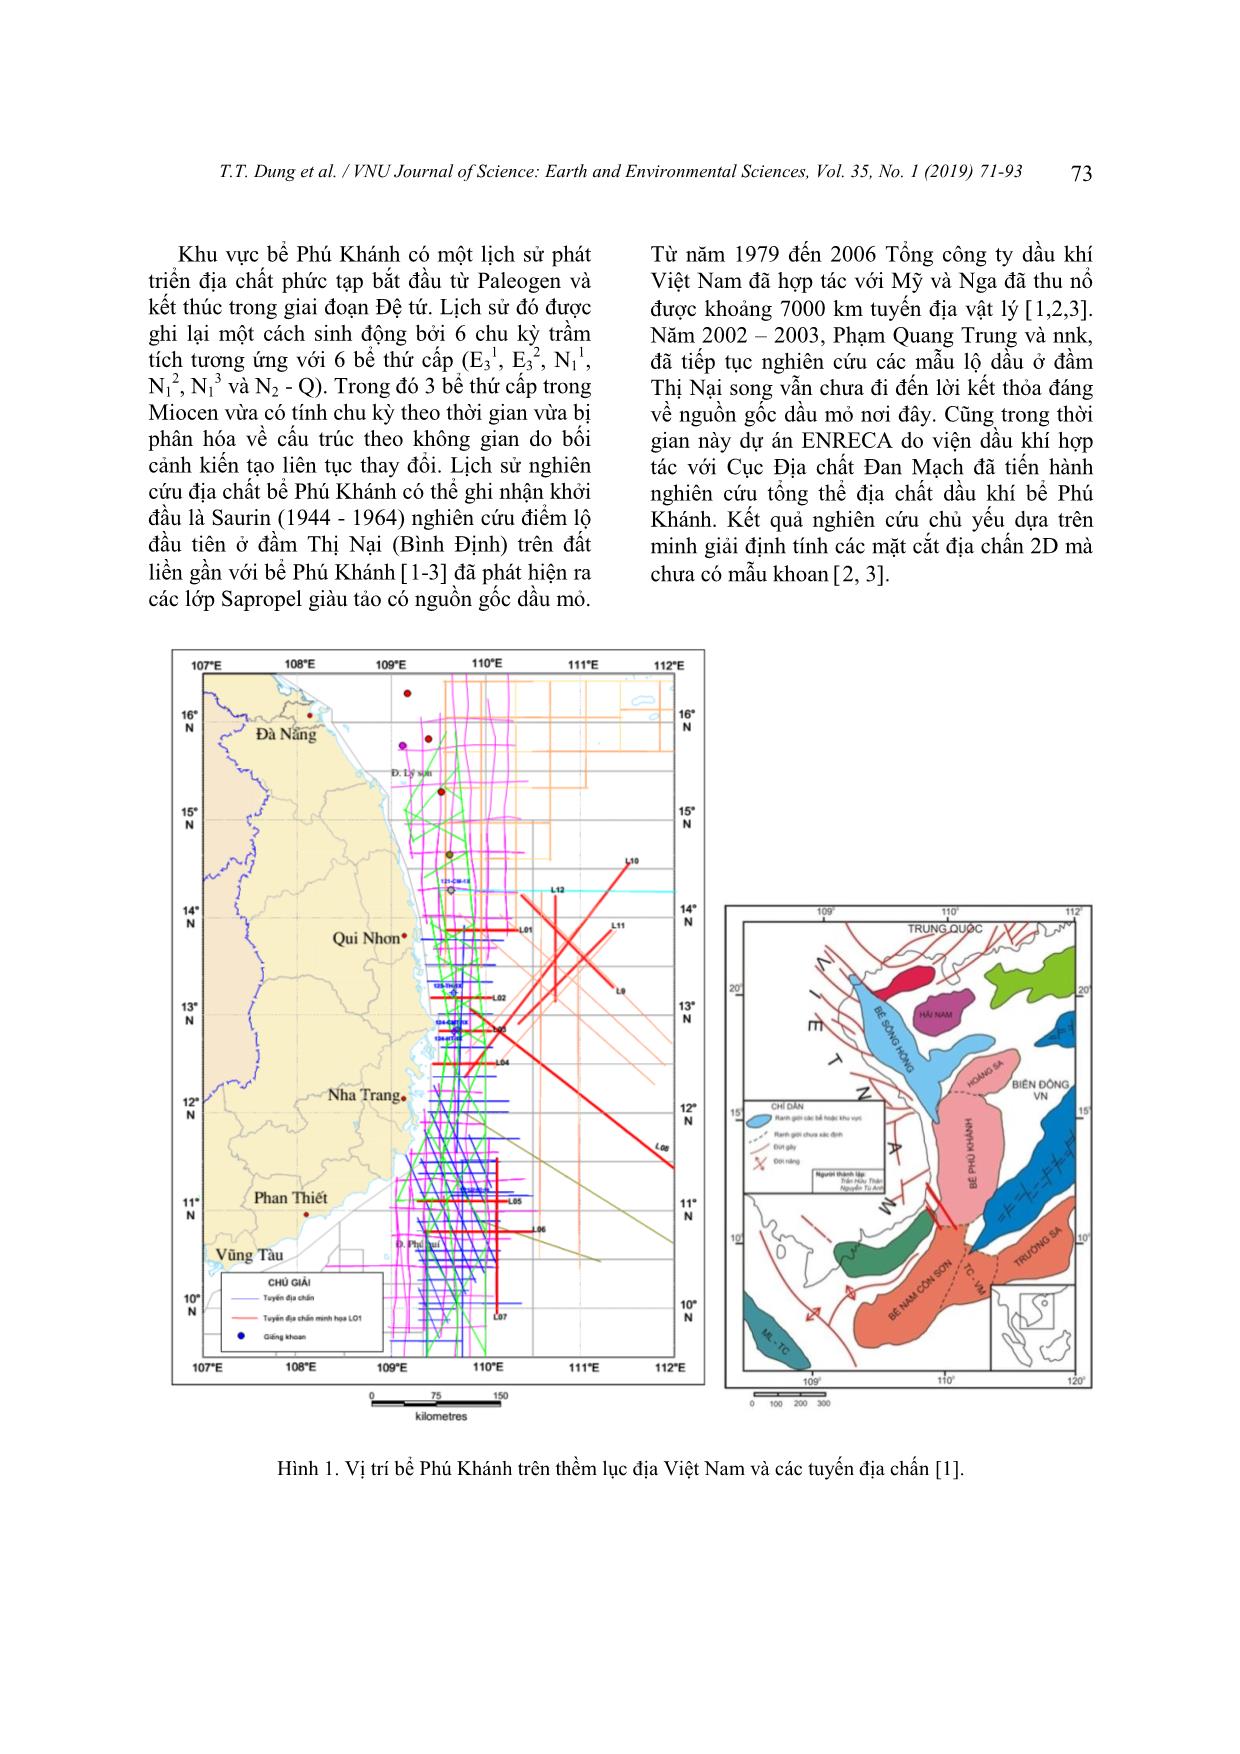 Tiến hóa cấu trúc địa chất và môi trường trầm tích Miocen khu vực bể phú khánh trang 3